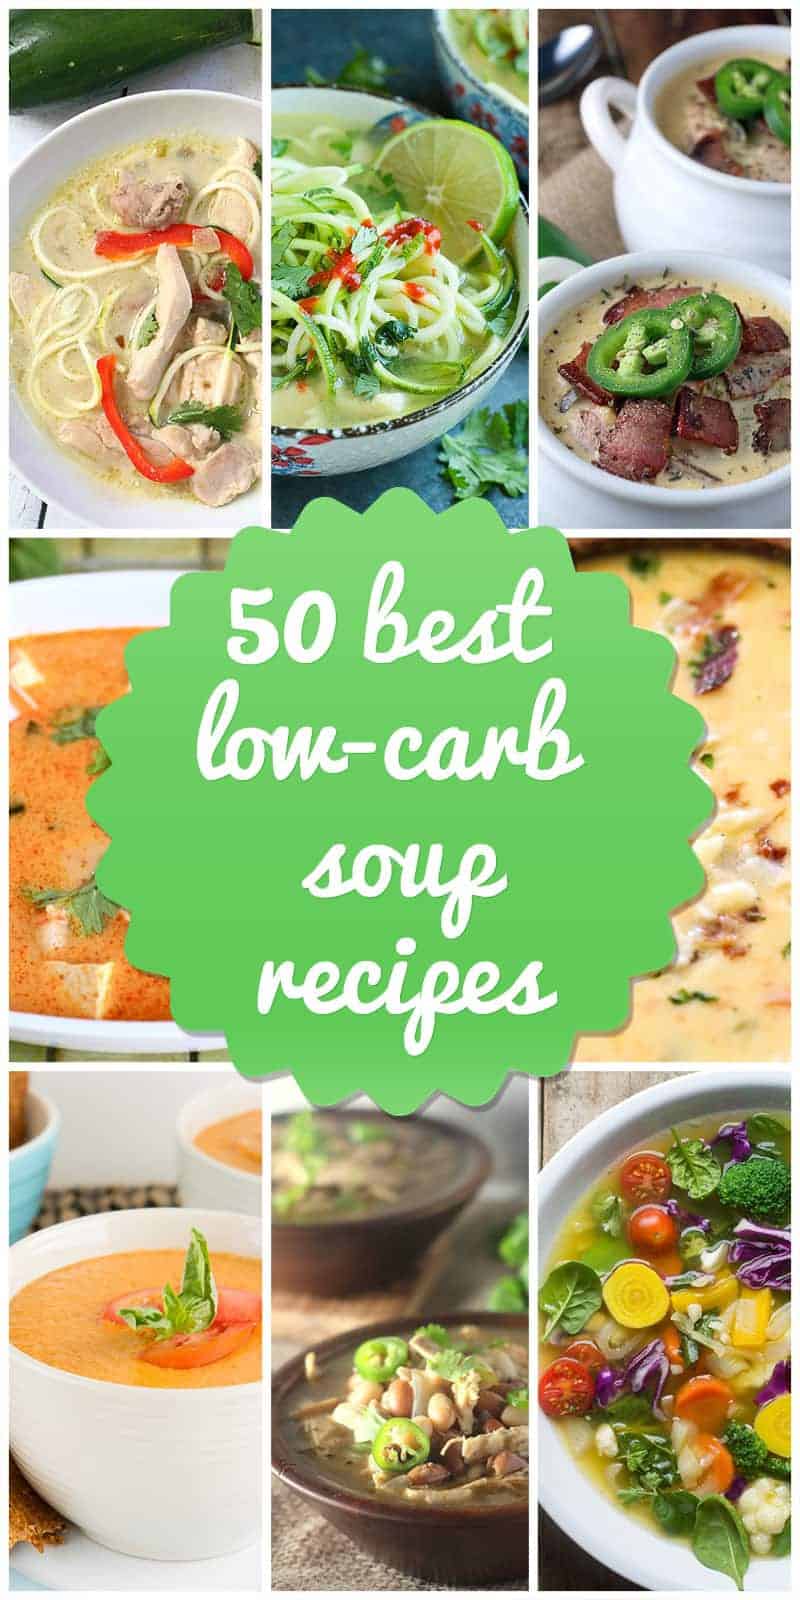 Low-Carb Soup Recipe ideas